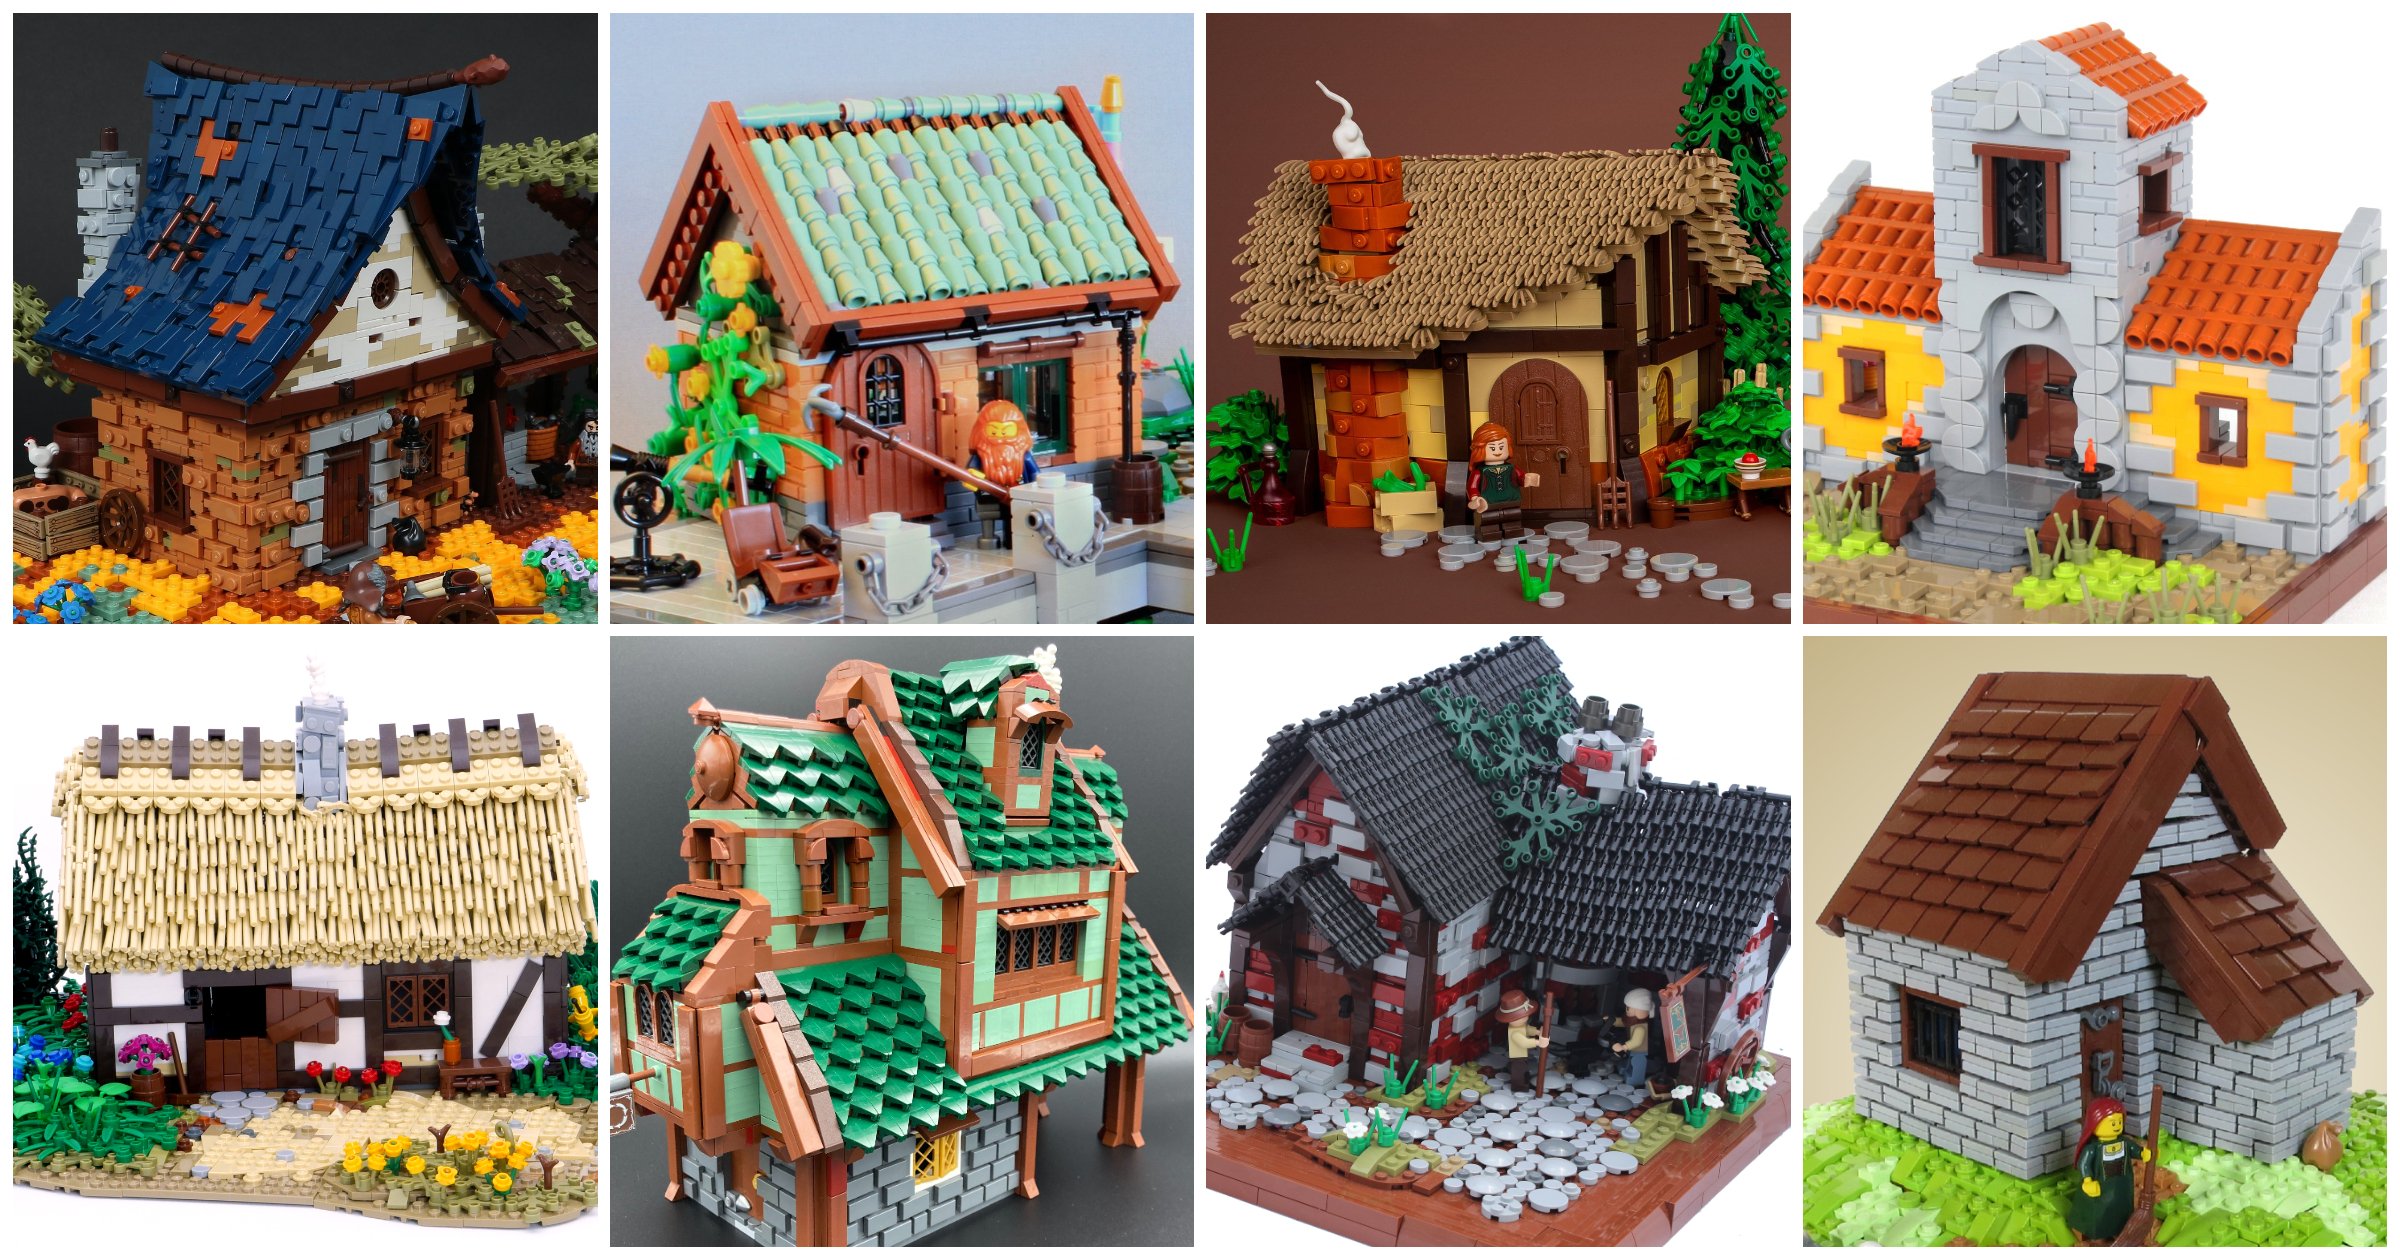 Ways to a LEGO Roof - BrickNerd - All LEGO and LEGO fan community